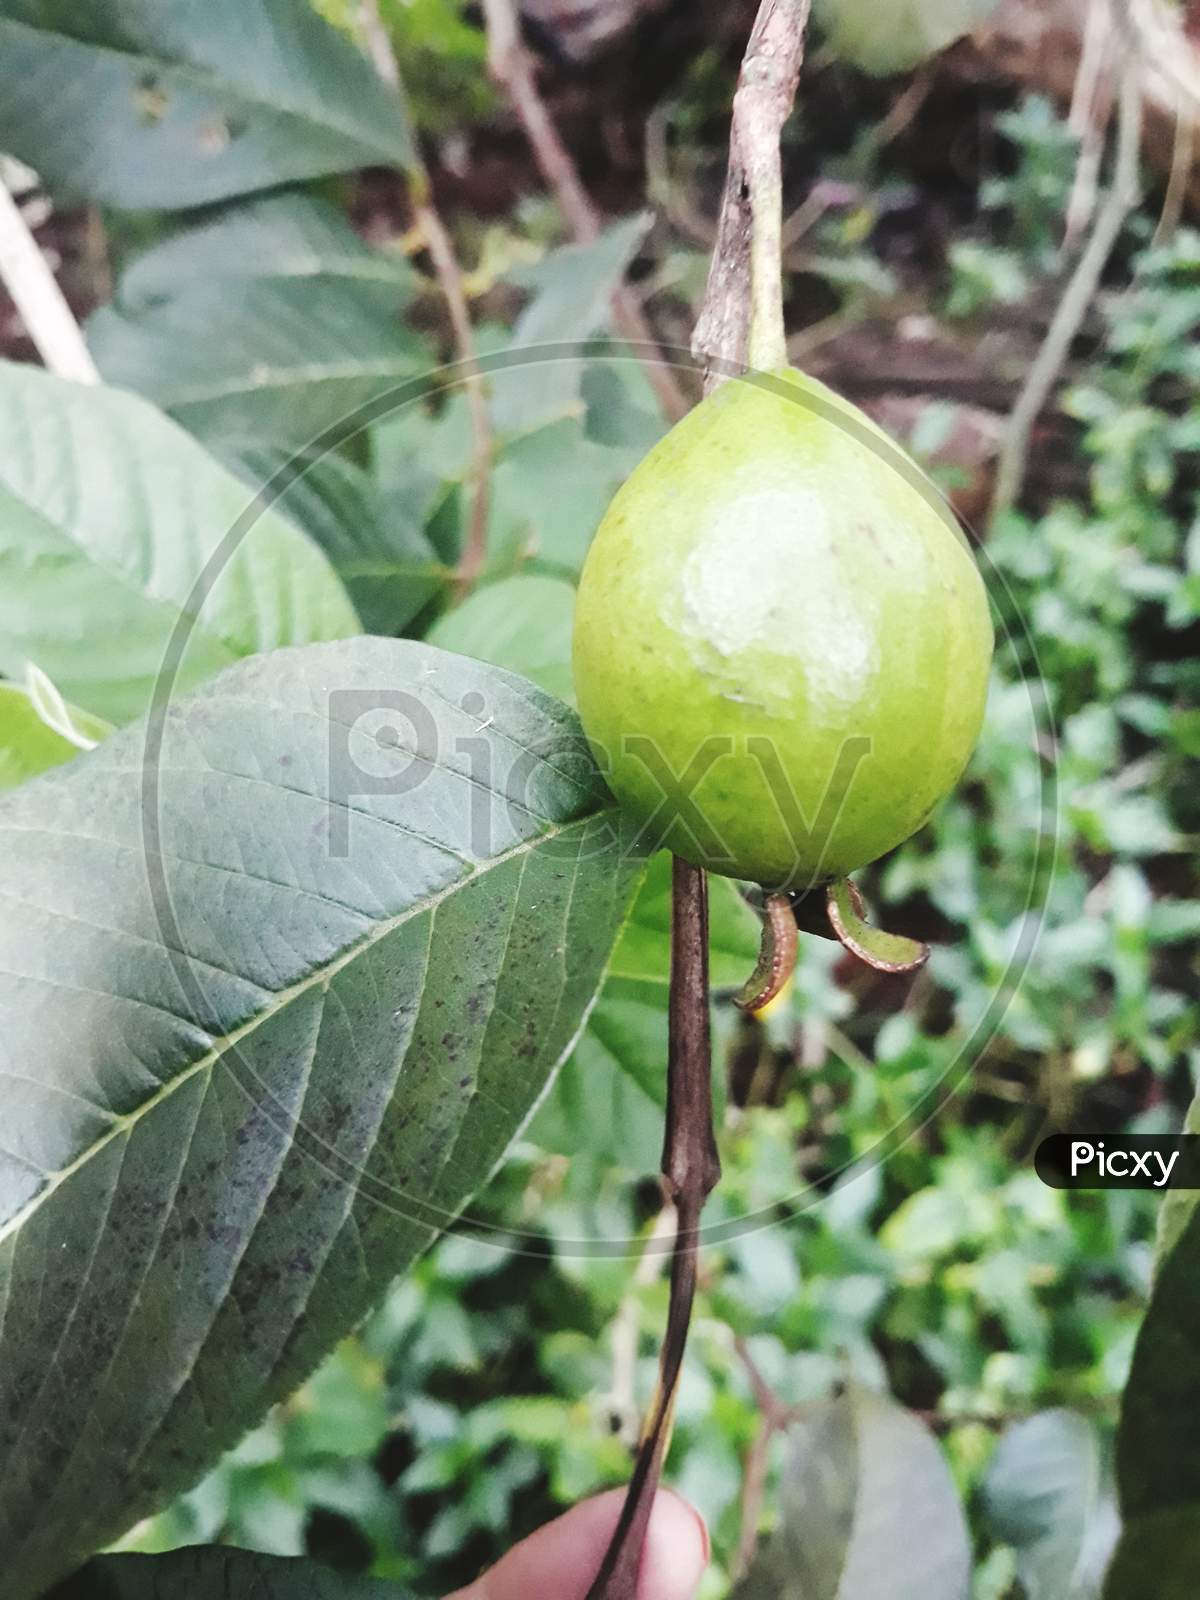 Pear nut